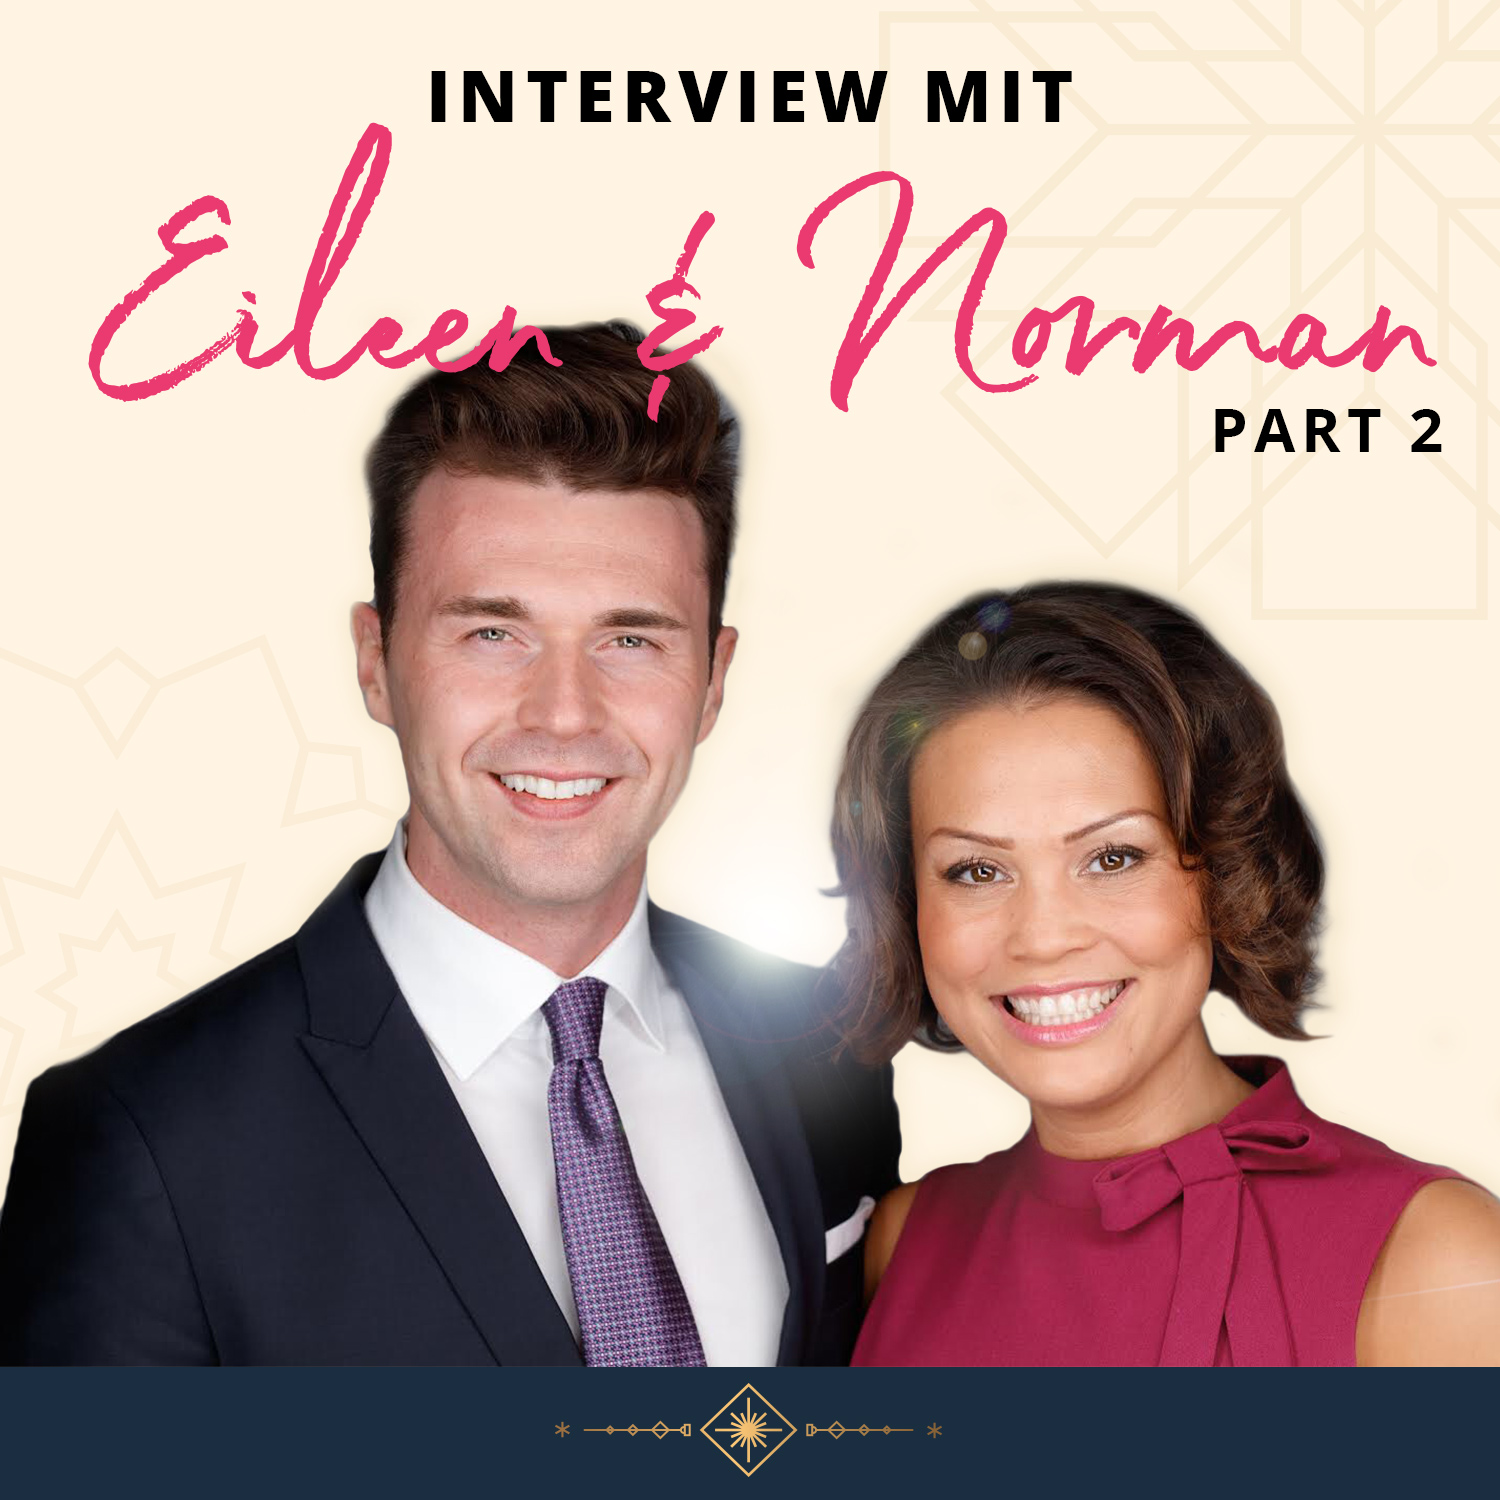 Part 2: Wachse oder Zerfalle - Interview mit den Mindset Coaches Eileen & Norman